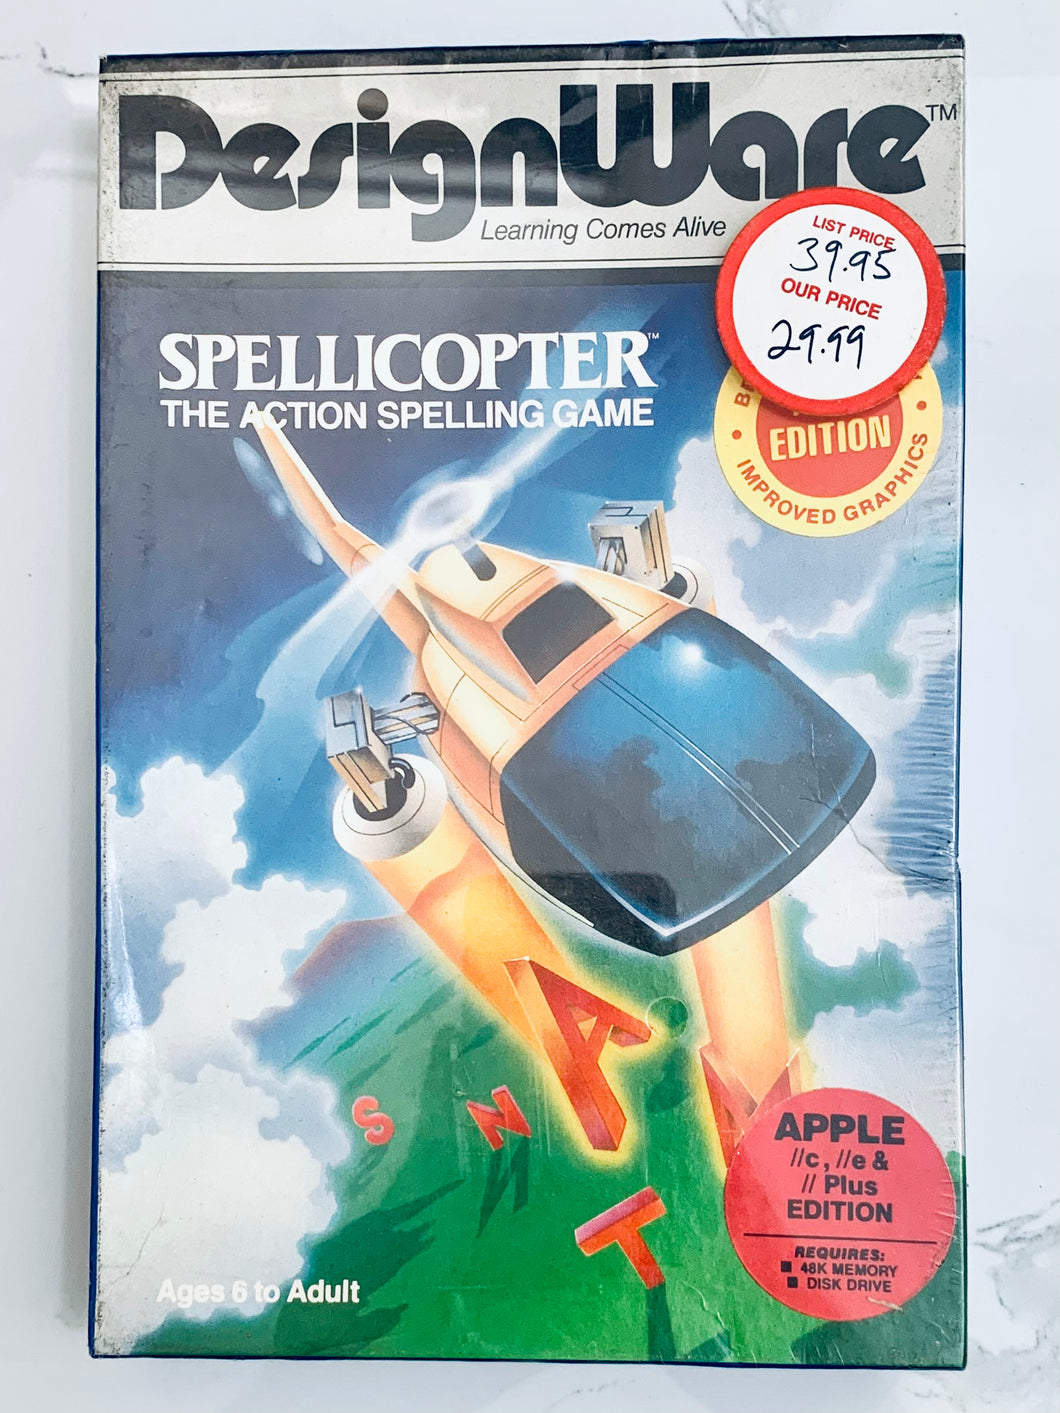 Spellicopter - Apple II/II+/IIe/IIc - 48K Disk - NTSC - Brand New